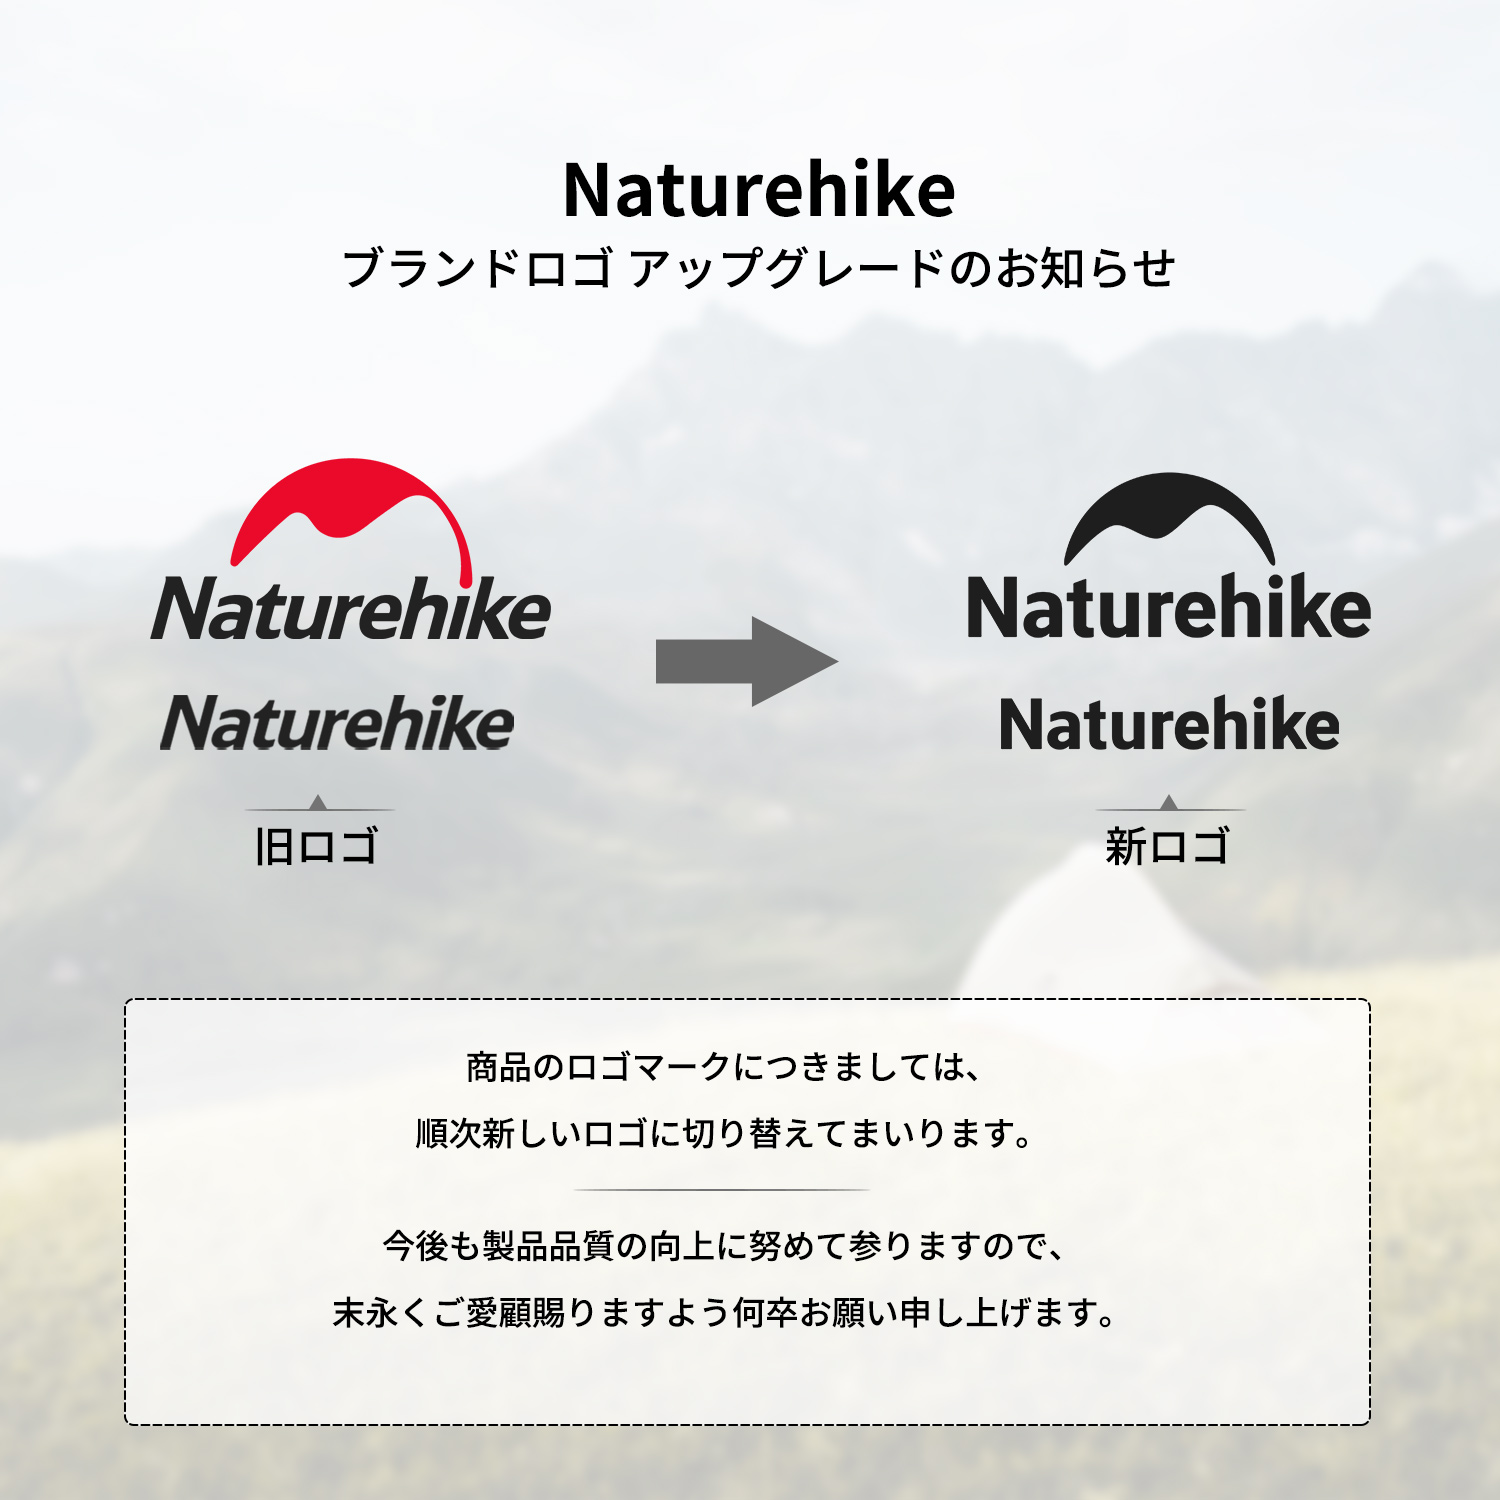 Naturehike Japan 公式サイト – Naturehike JAPAN